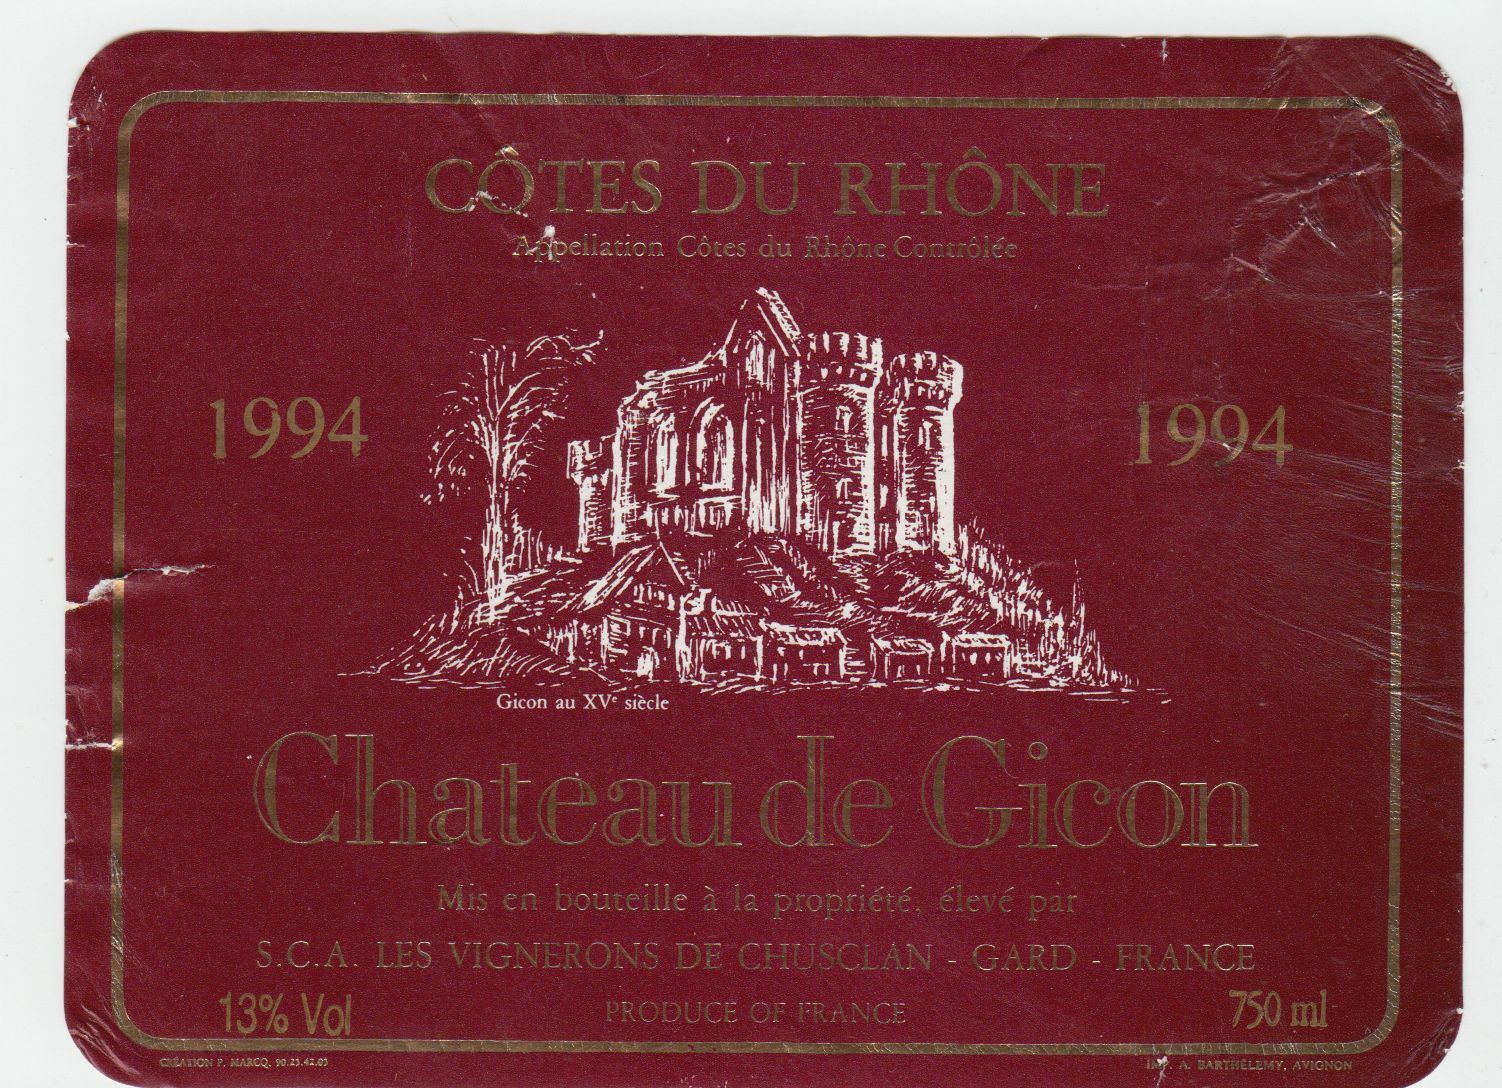 ETIQUETTE DE VIN COTES DU RHONE 1994 CHATEAU DE GICON GUSCLAN GARD 124461940540